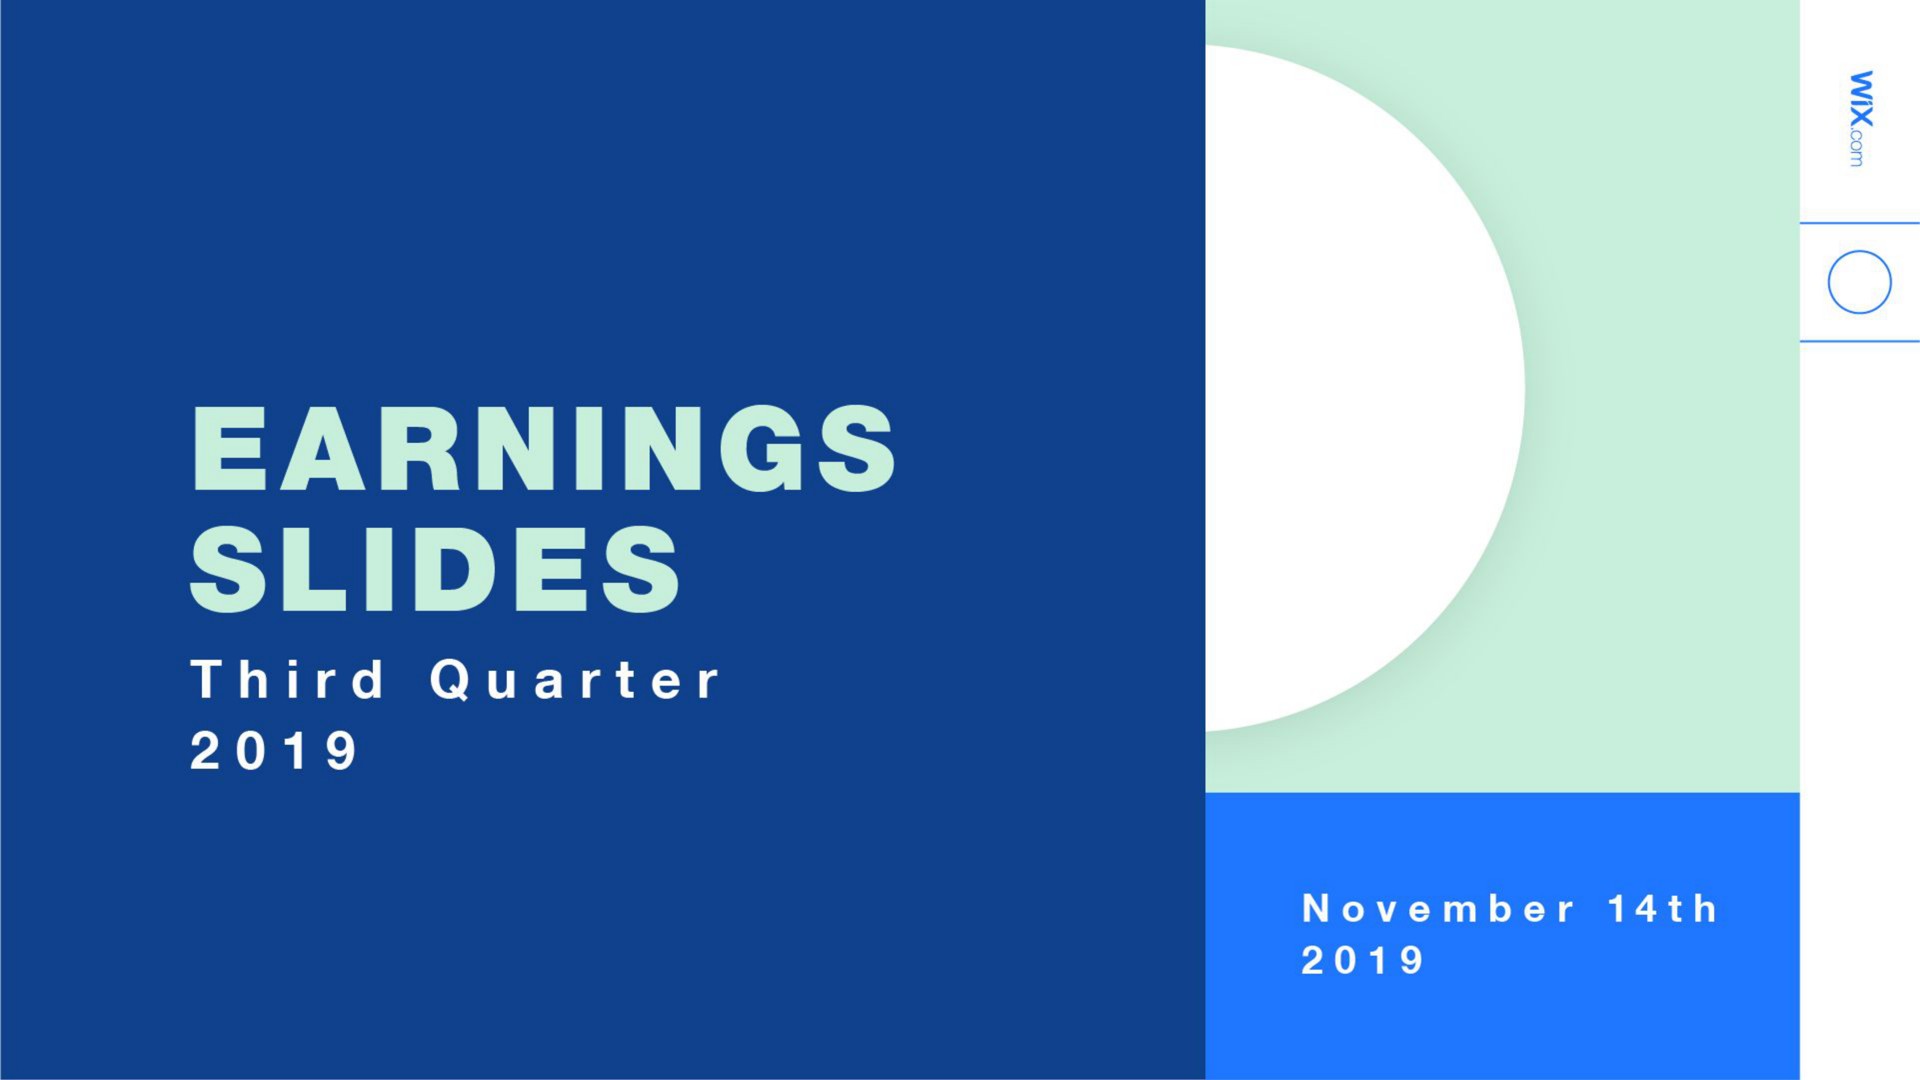 earnings slides third quarter | Wix